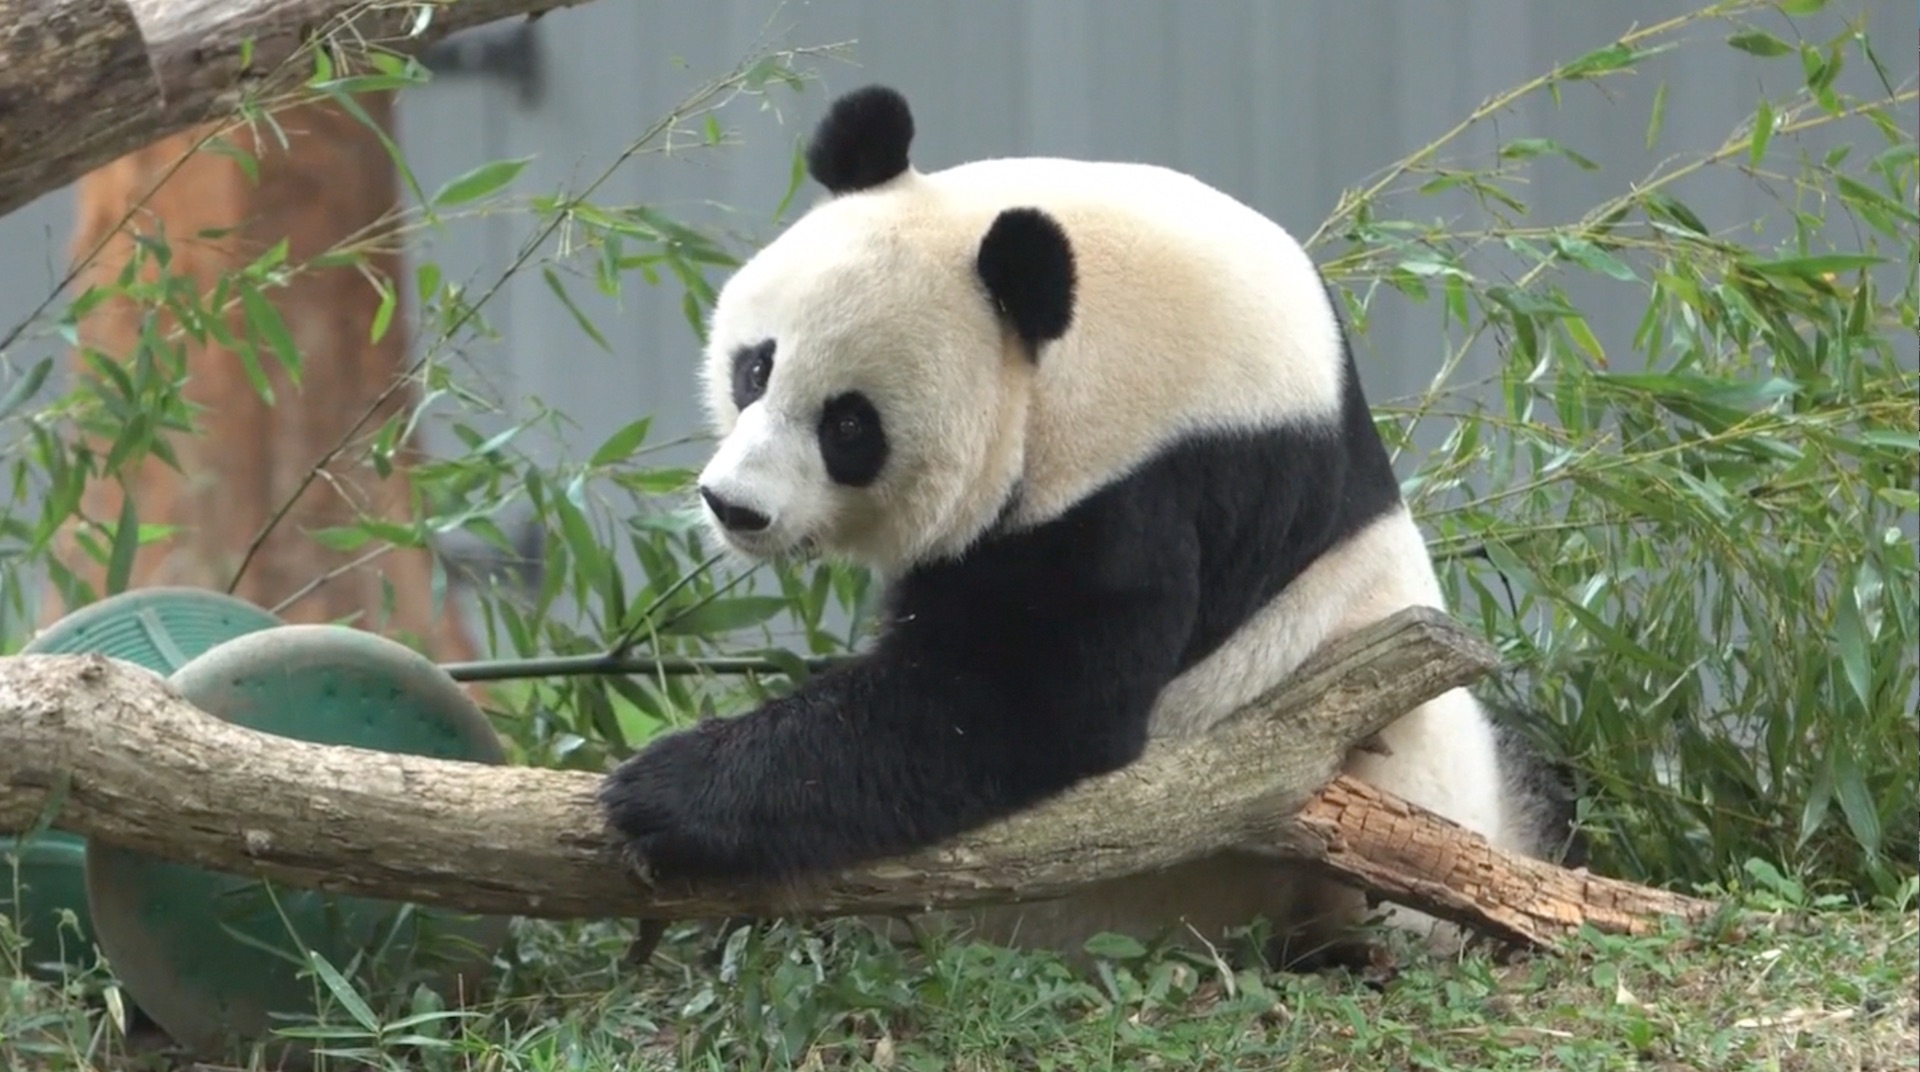 panda berkembang biak dengan cara